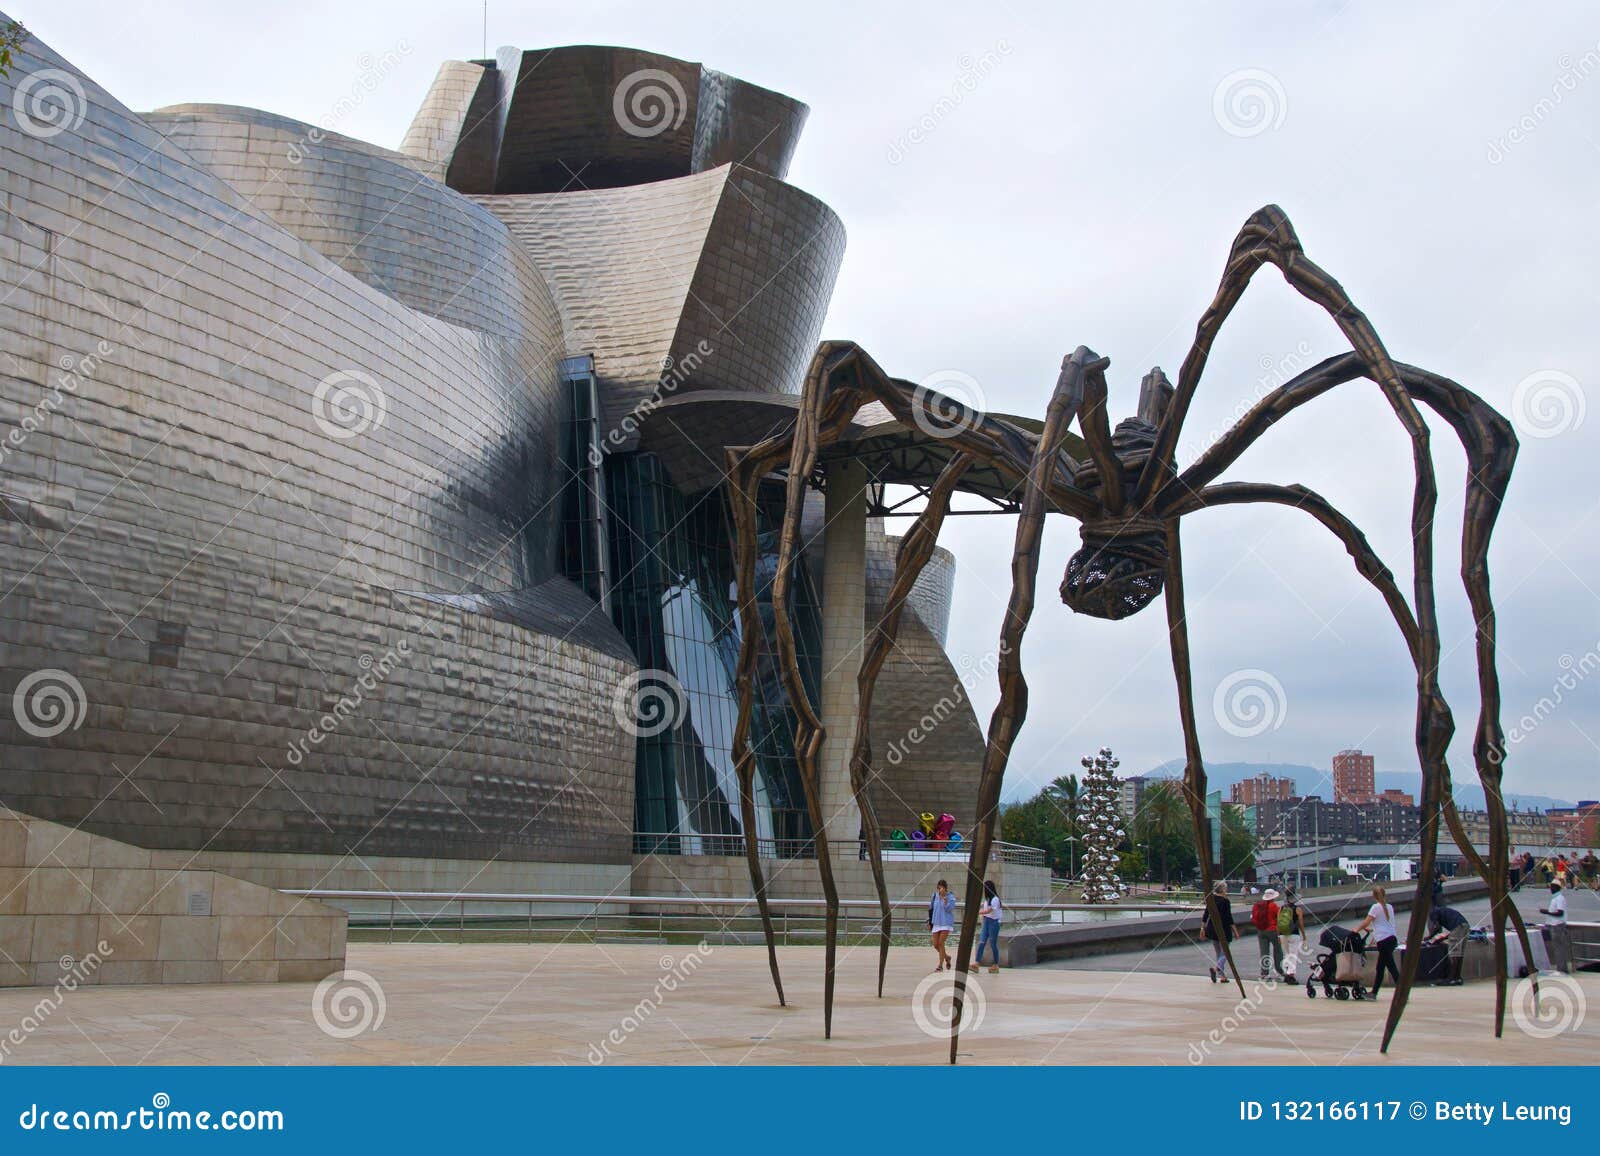 Bilbao, Spain September 2018 The Giant Steel Spider